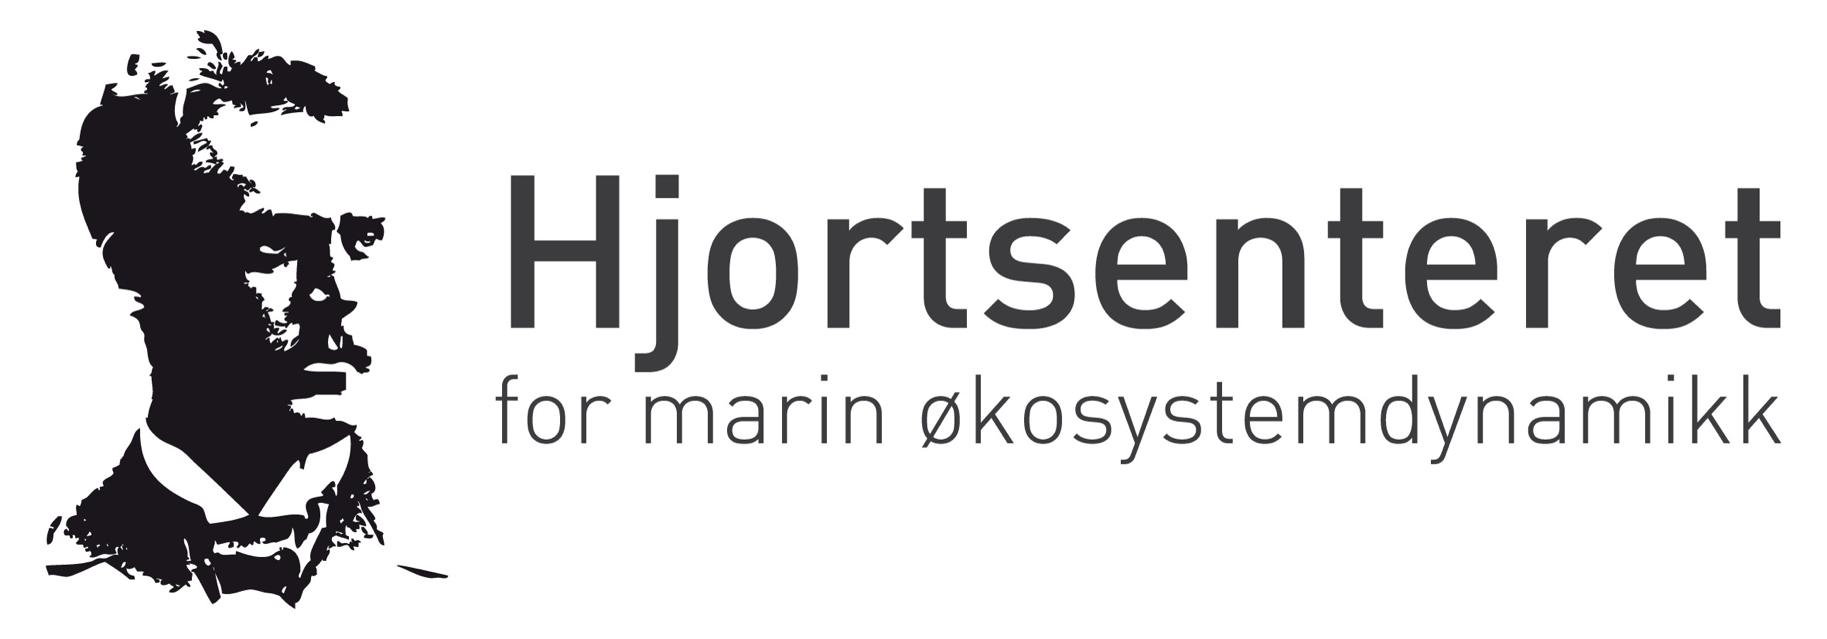 Johan Hjort har gitt namn til eit nytt forskingssenter etablert i år. (Ill: Hjortsenteret)